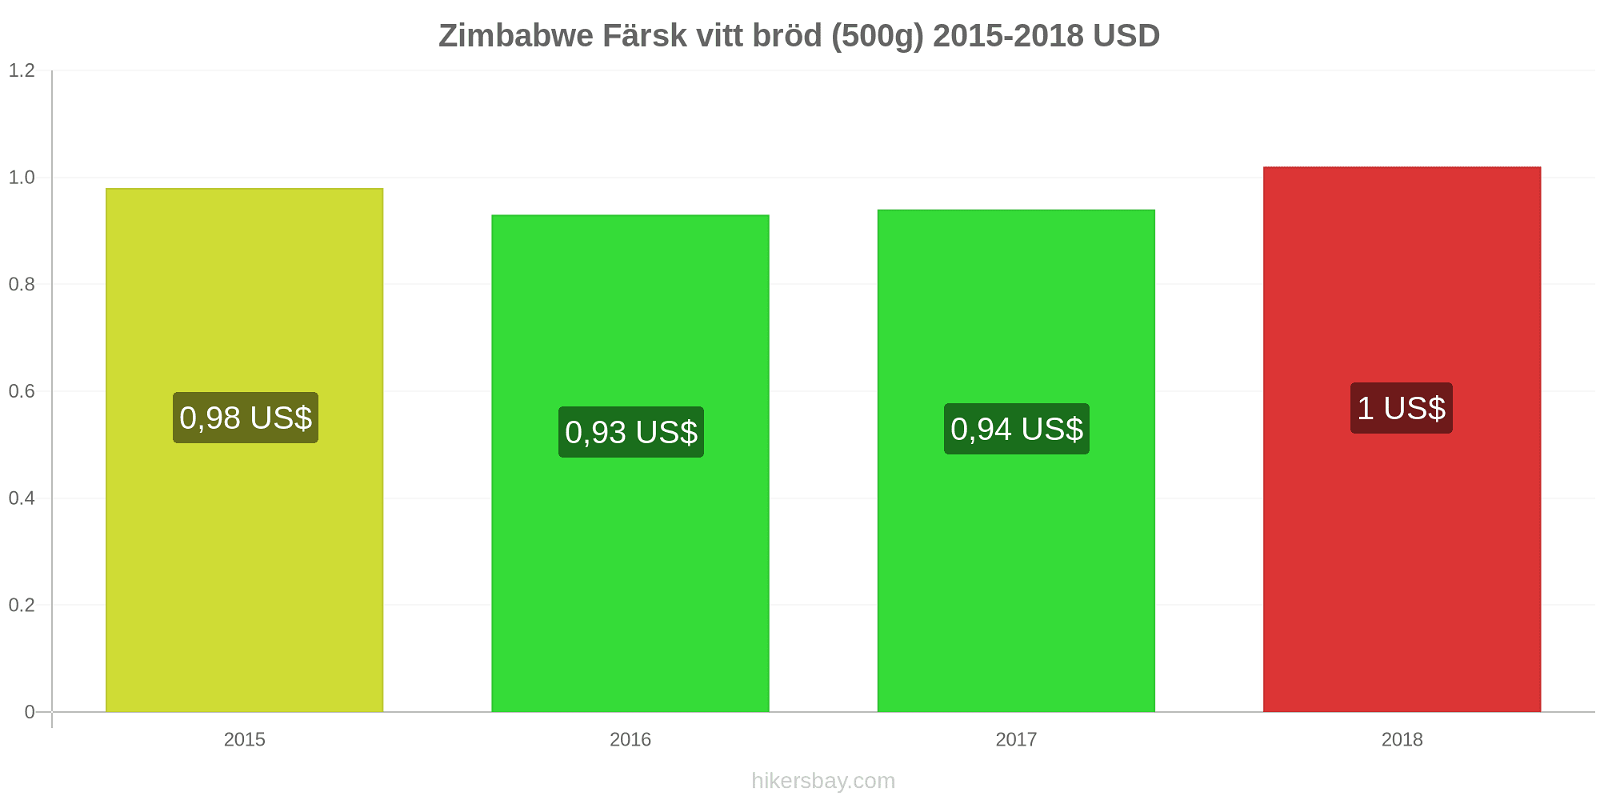 Zimbabwe prisändringar Färsk vitt bröd (500g) hikersbay.com